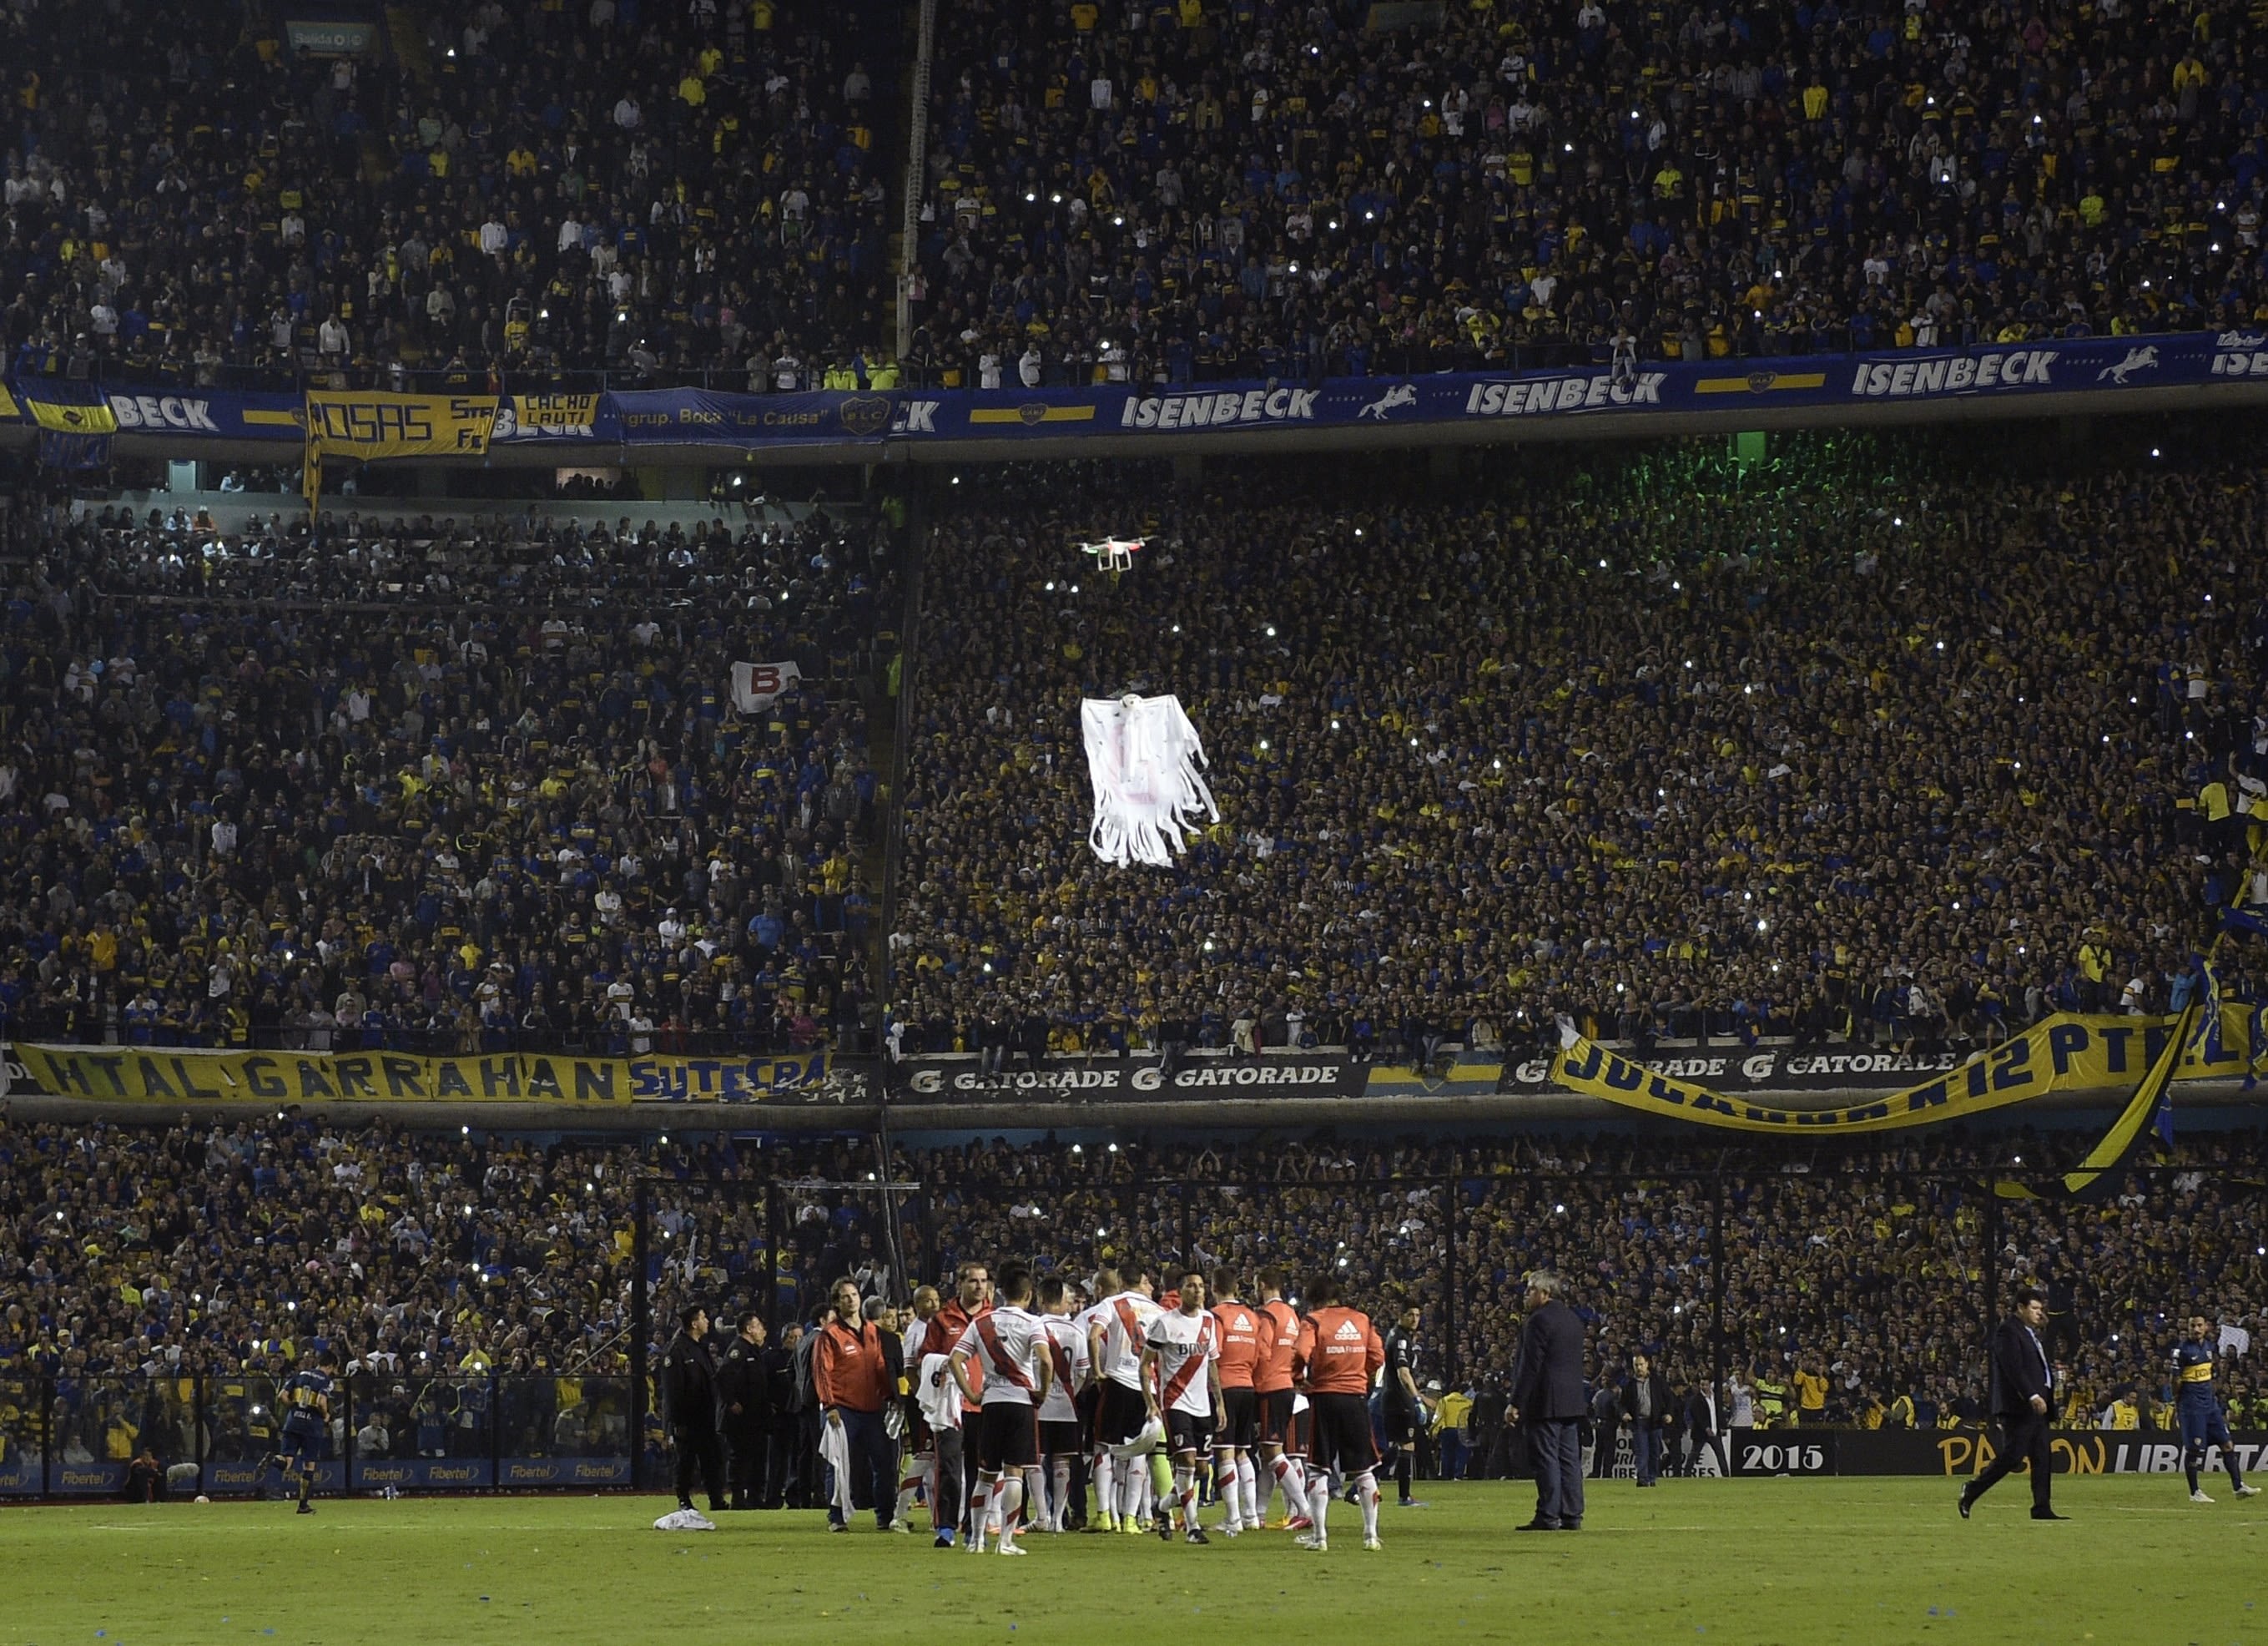 Boca thrown out of Copa Libertadores | CNN